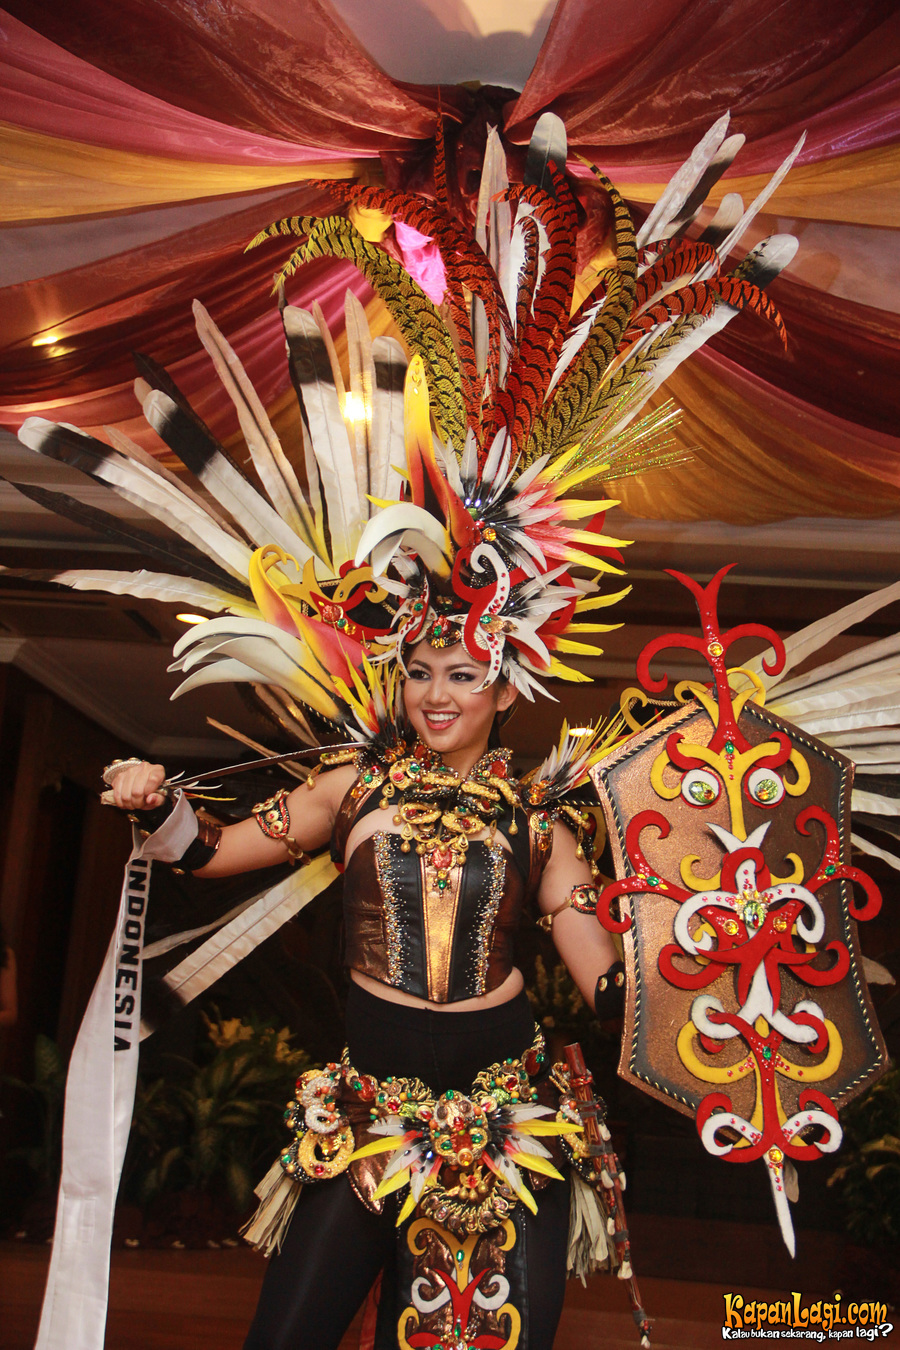  Kostum Nasional Indonesia Babat Habis Ajang Kecantikan 